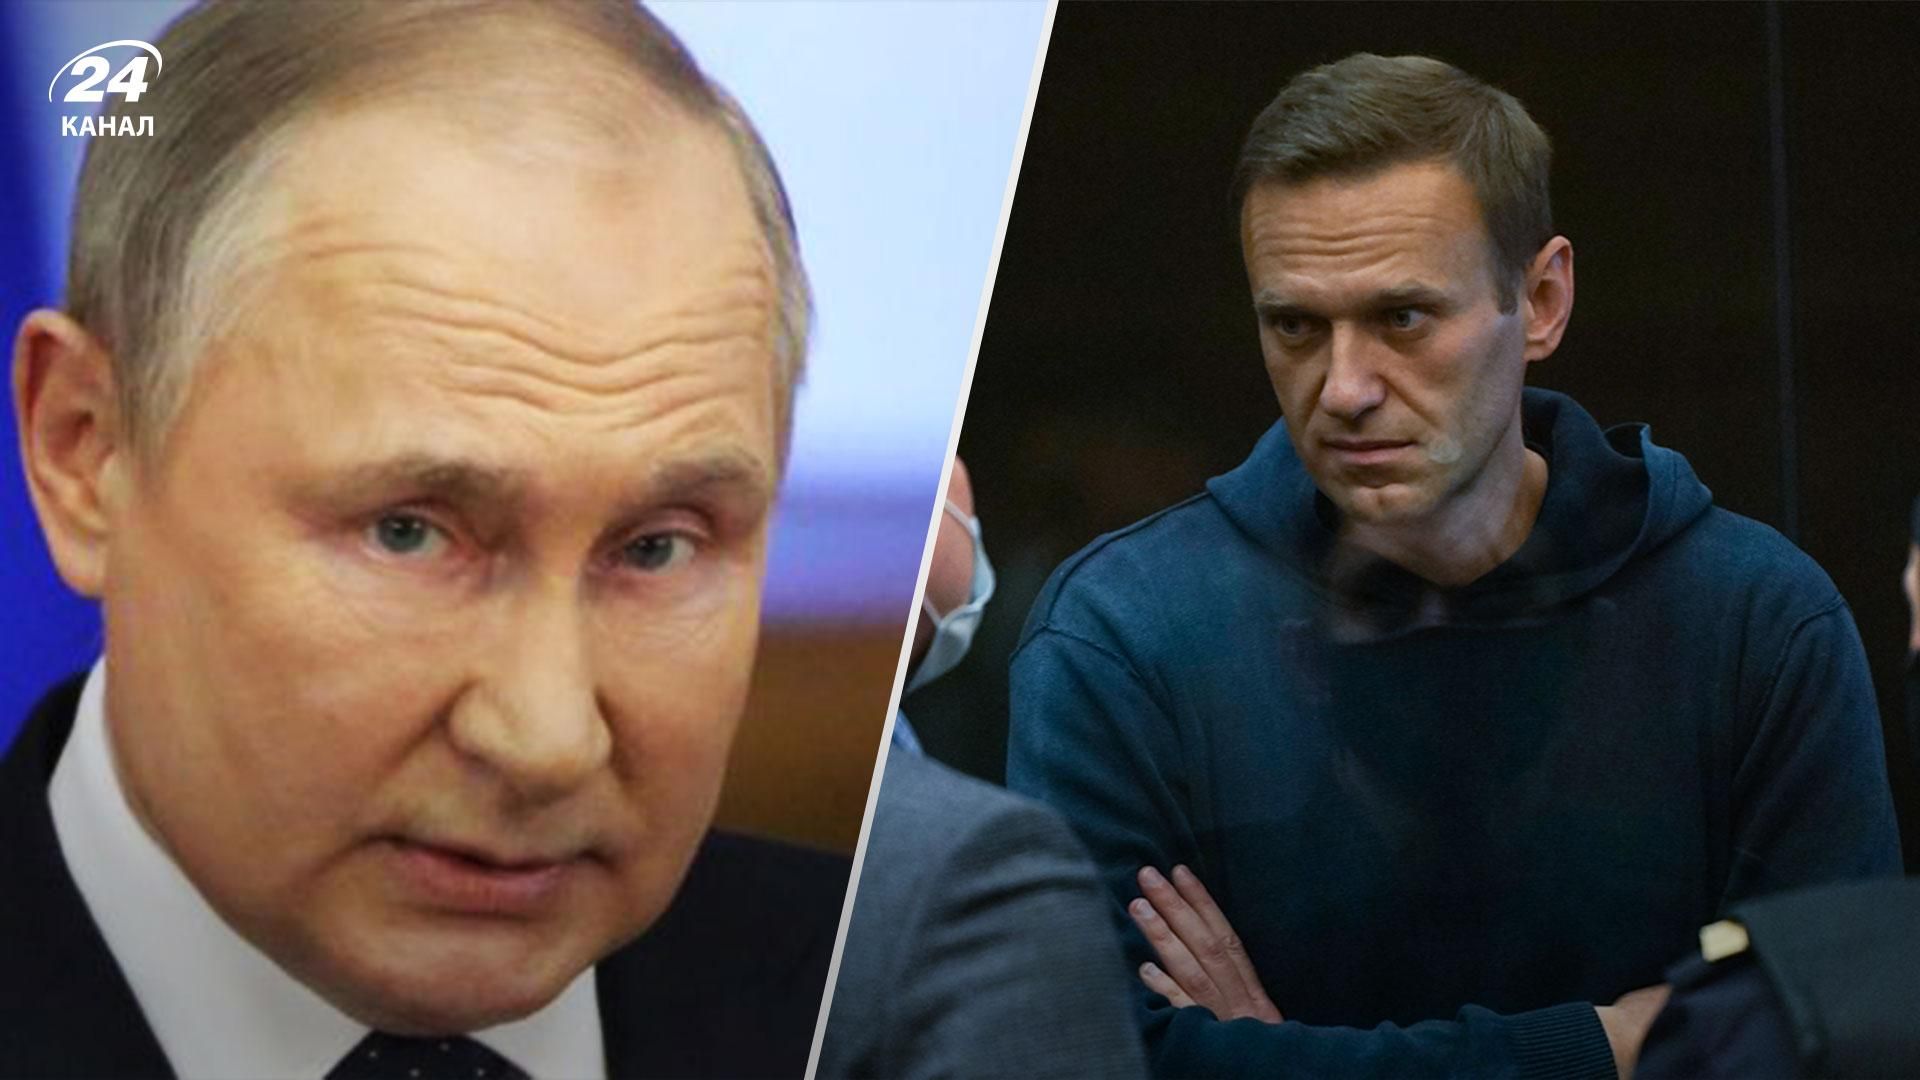 Еще 15 лет тюрьмы: Навальному объявили обвинение по делу об экстремизме